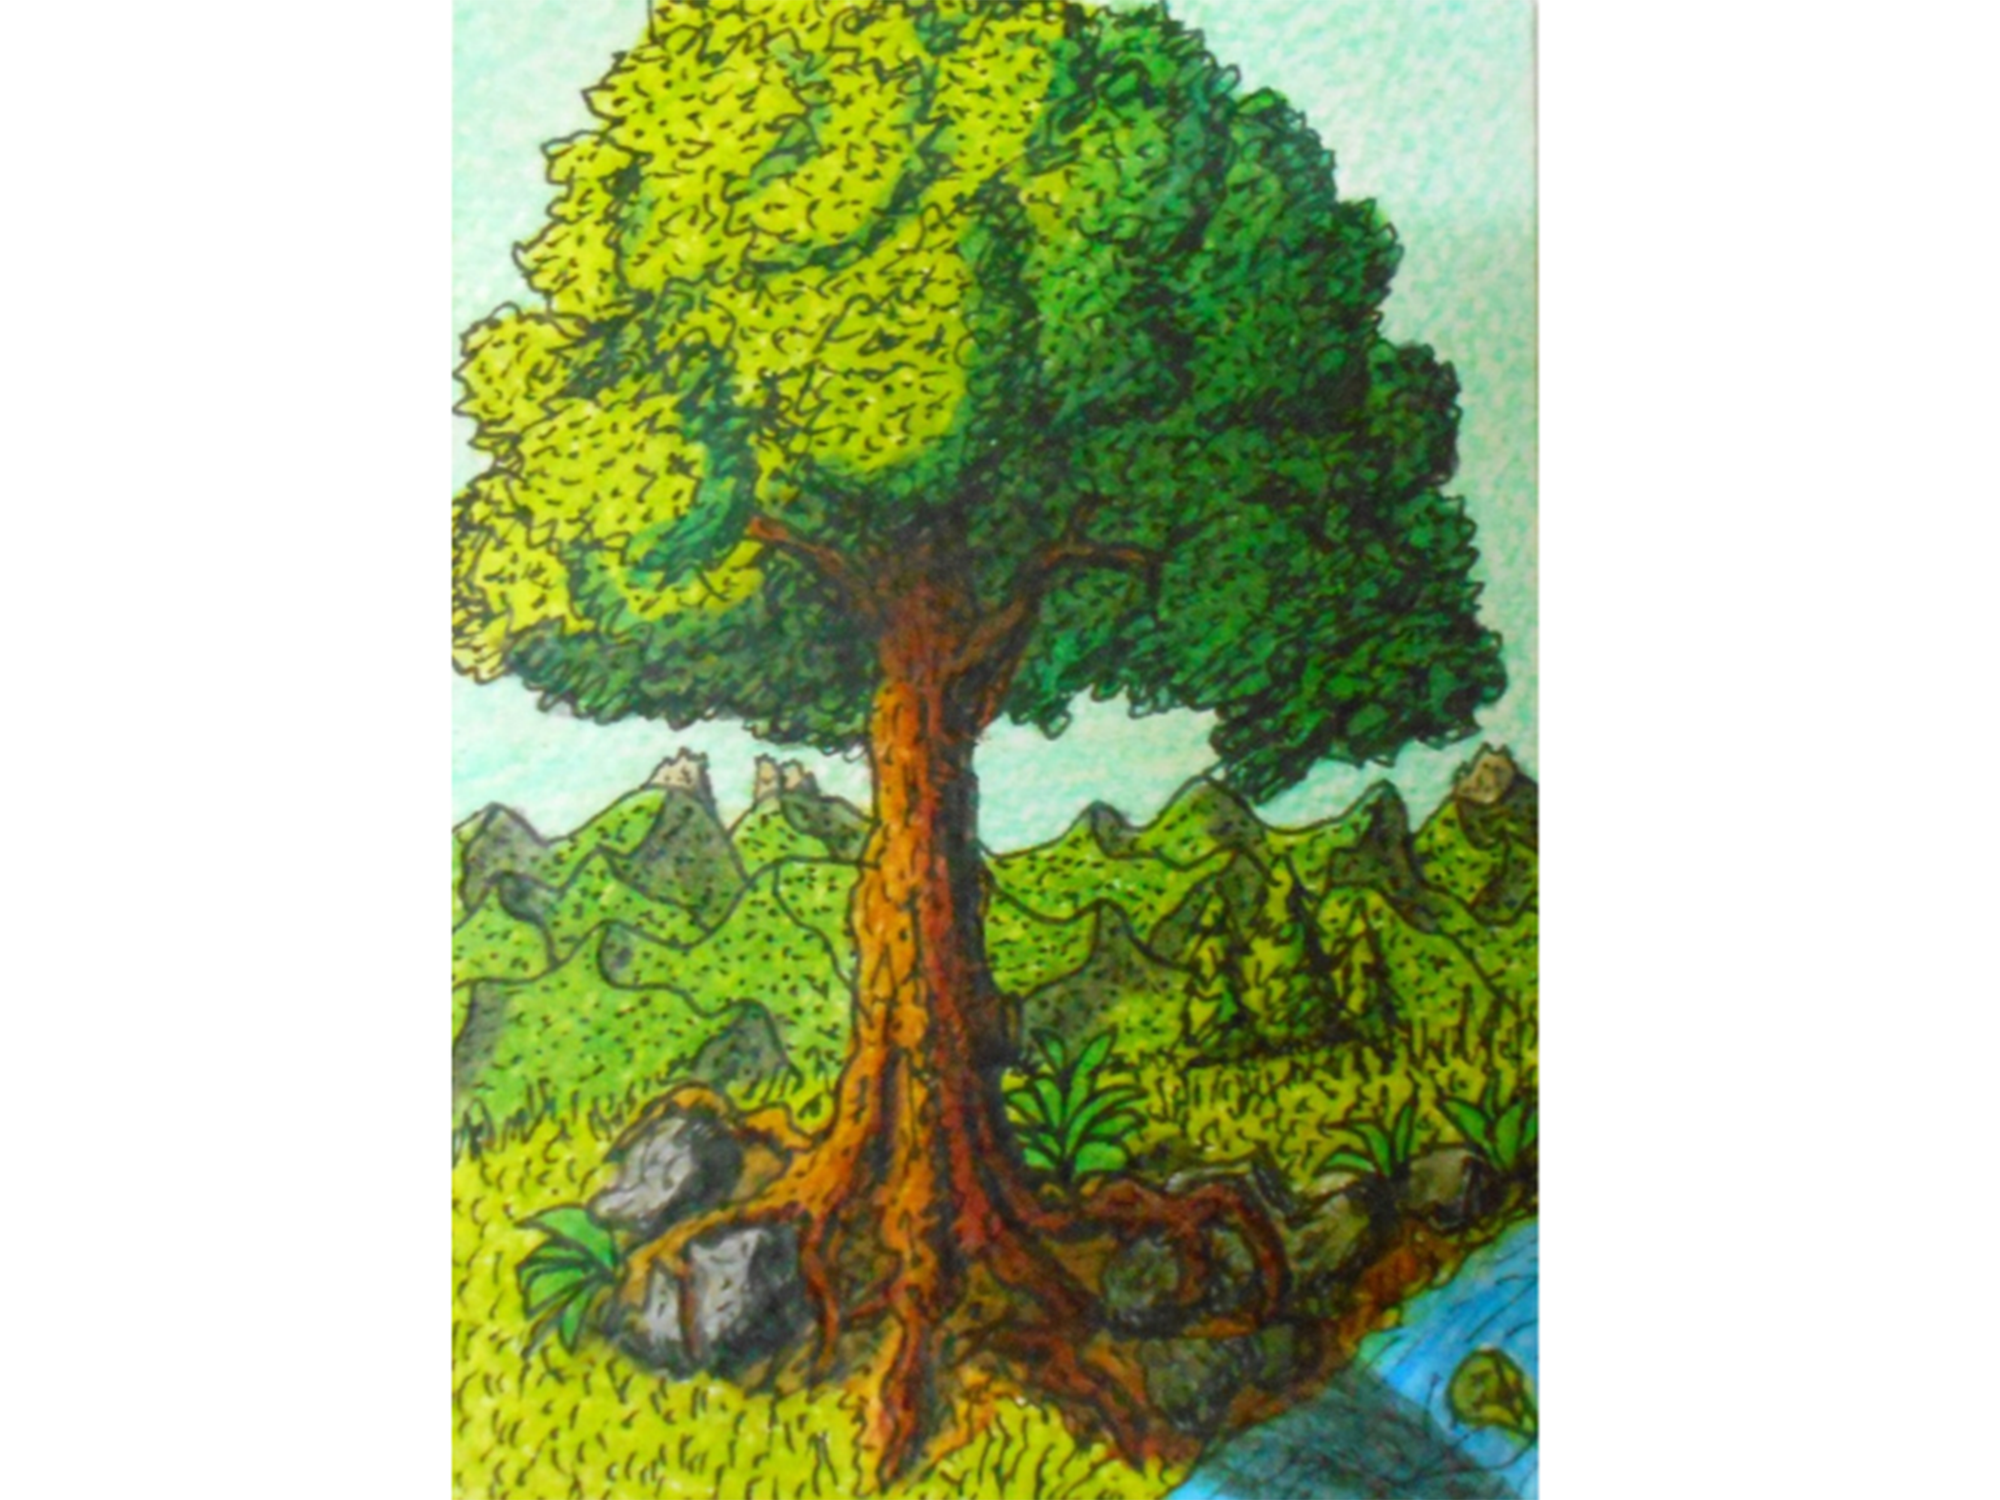 Oak tree near a river in the mountain view landscape art illustration